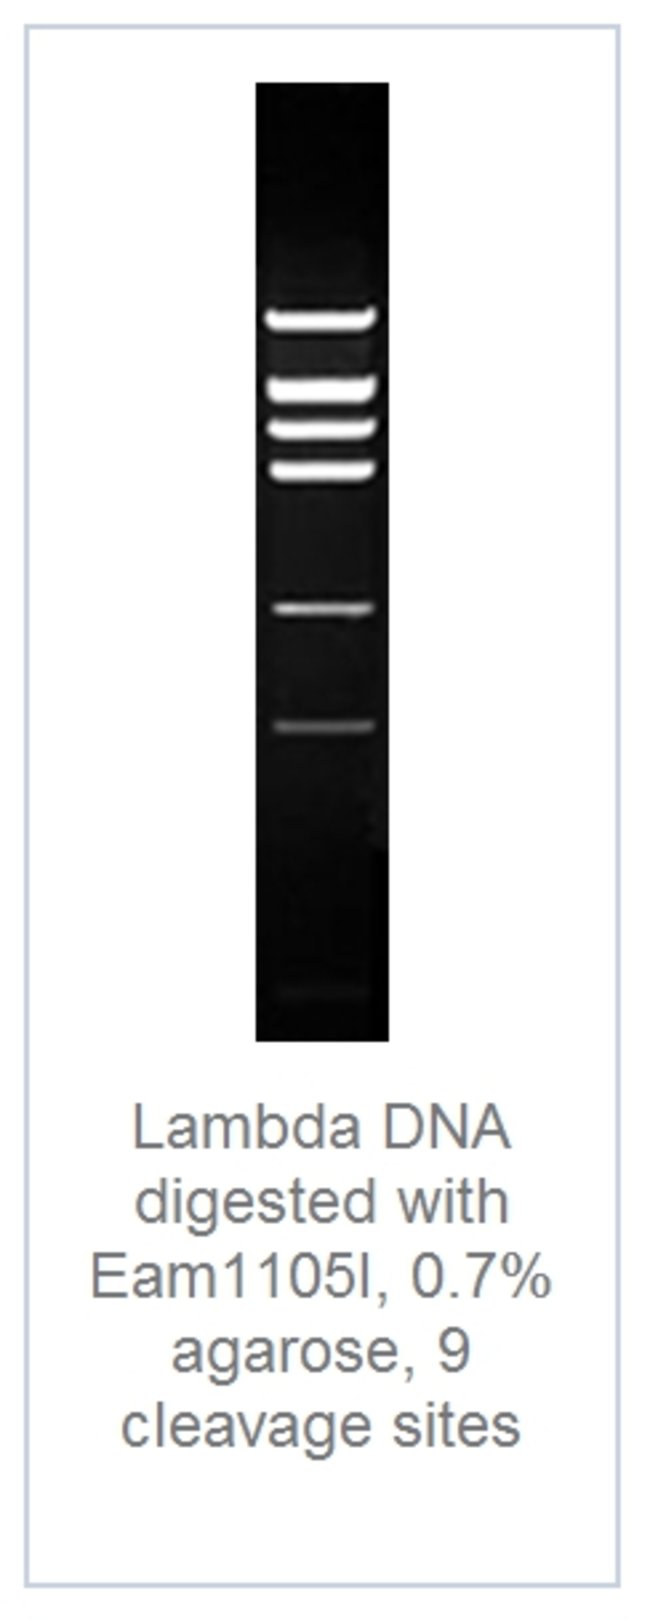 DNA digest